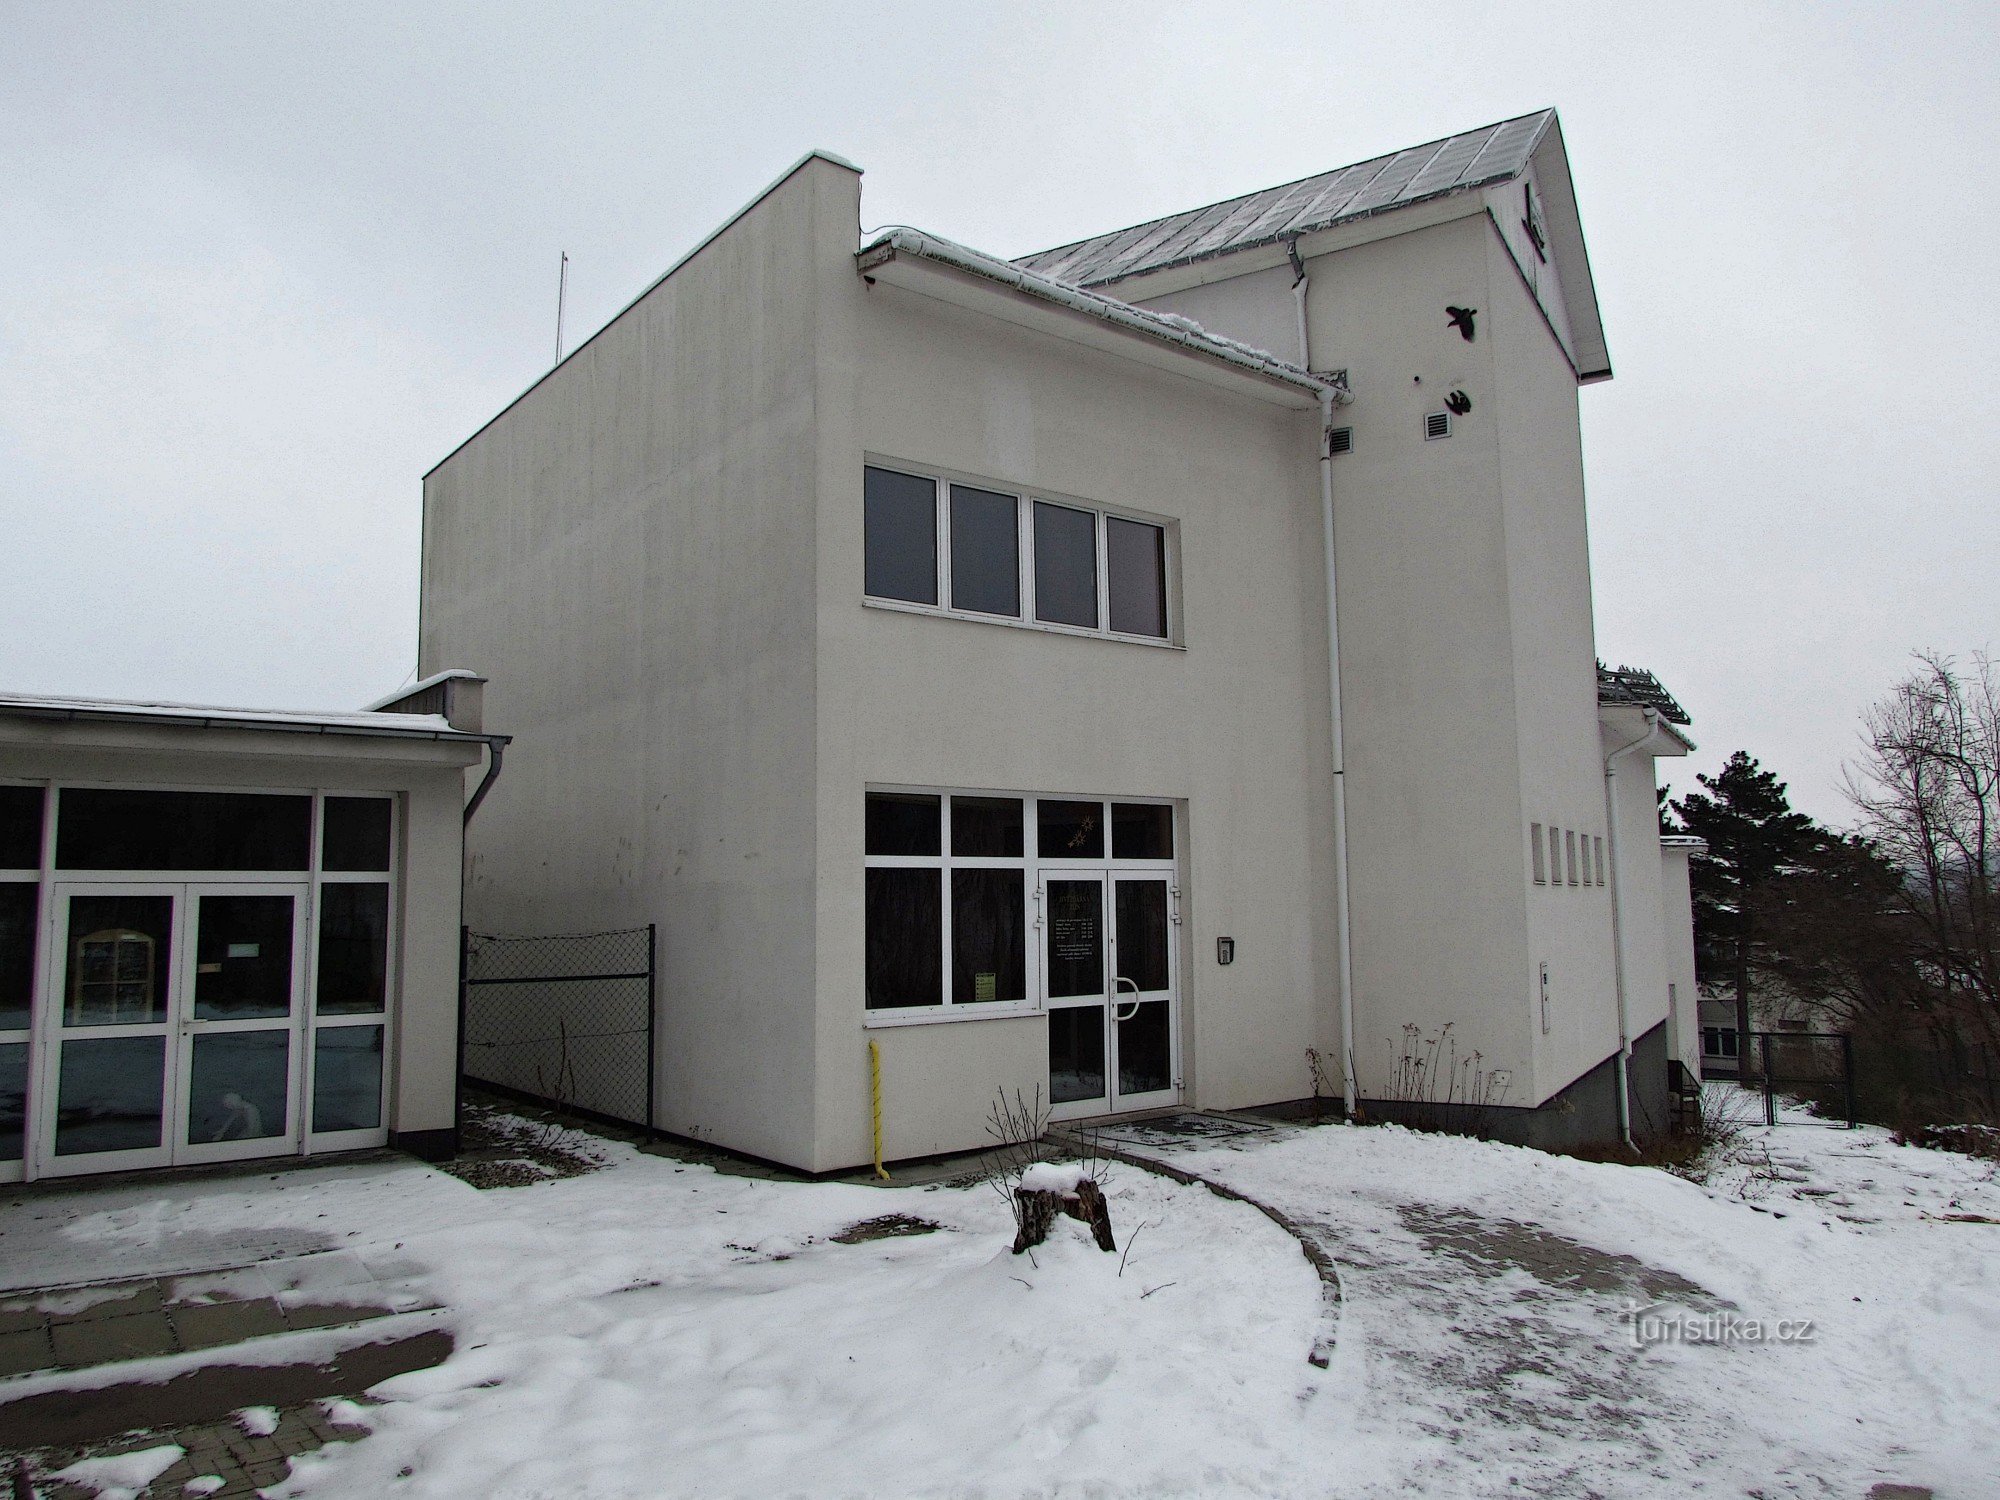 Zlín - observatory